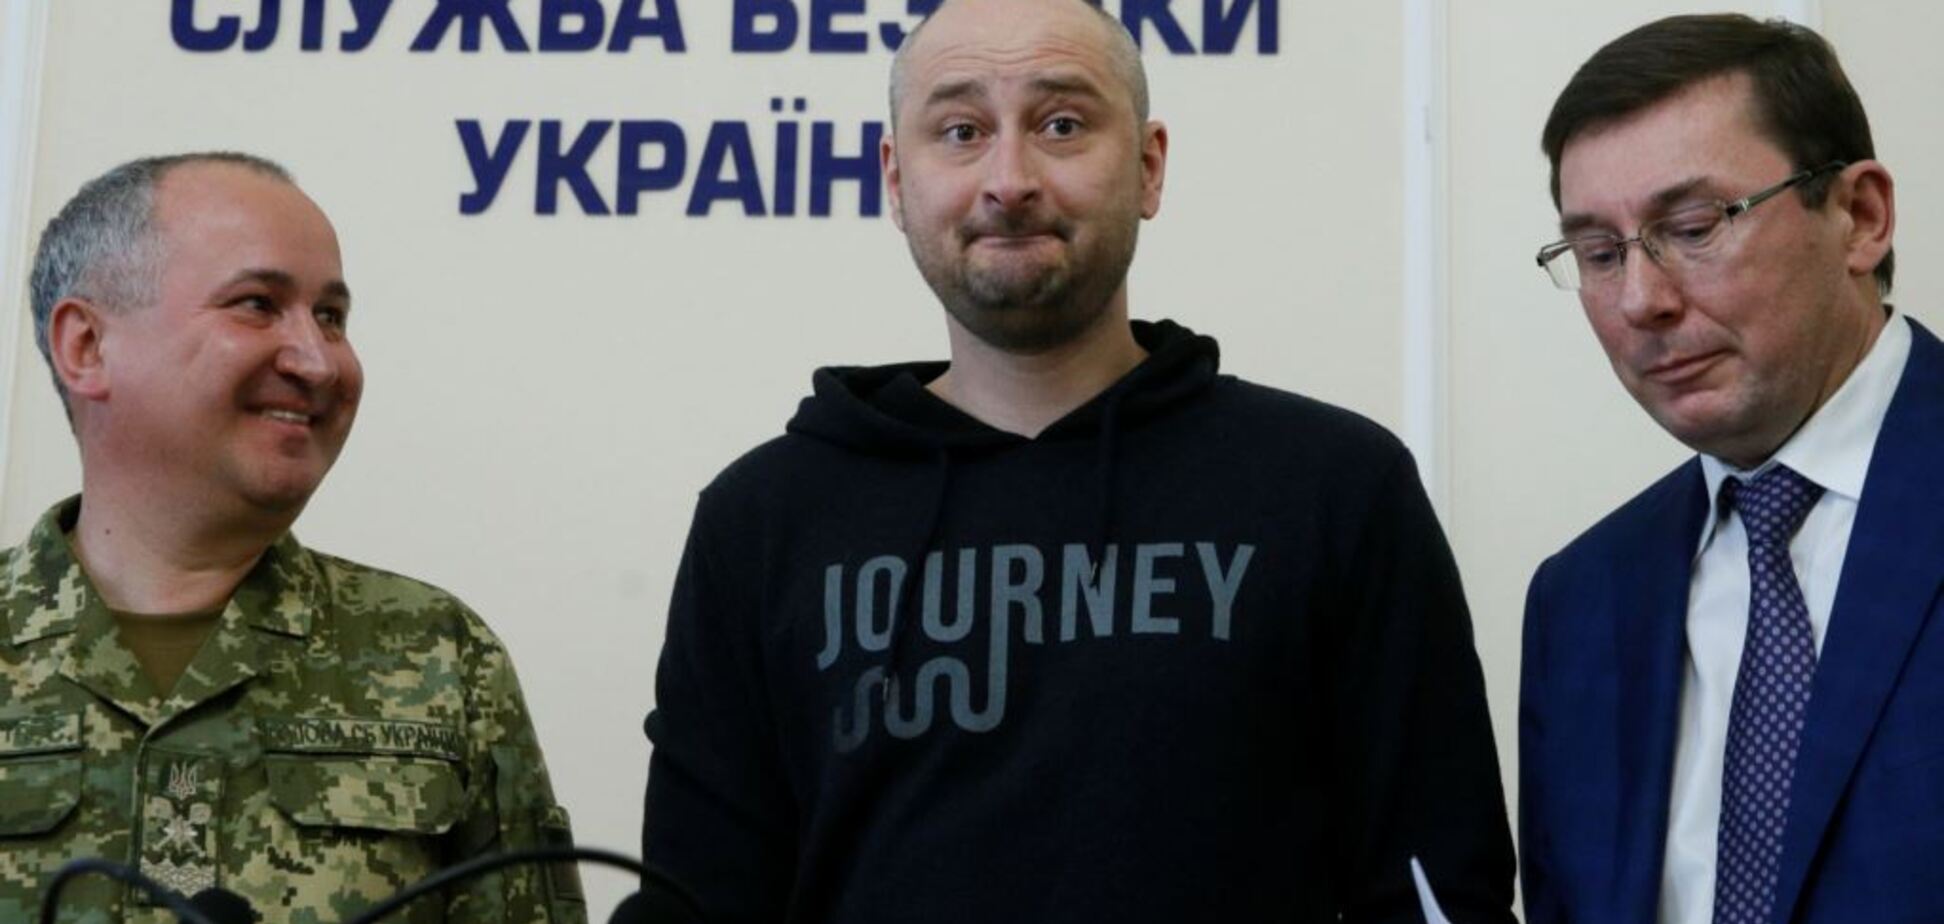 'Изображал в морге мертвого': Бабченко рассказал об организации своего 'убийства'